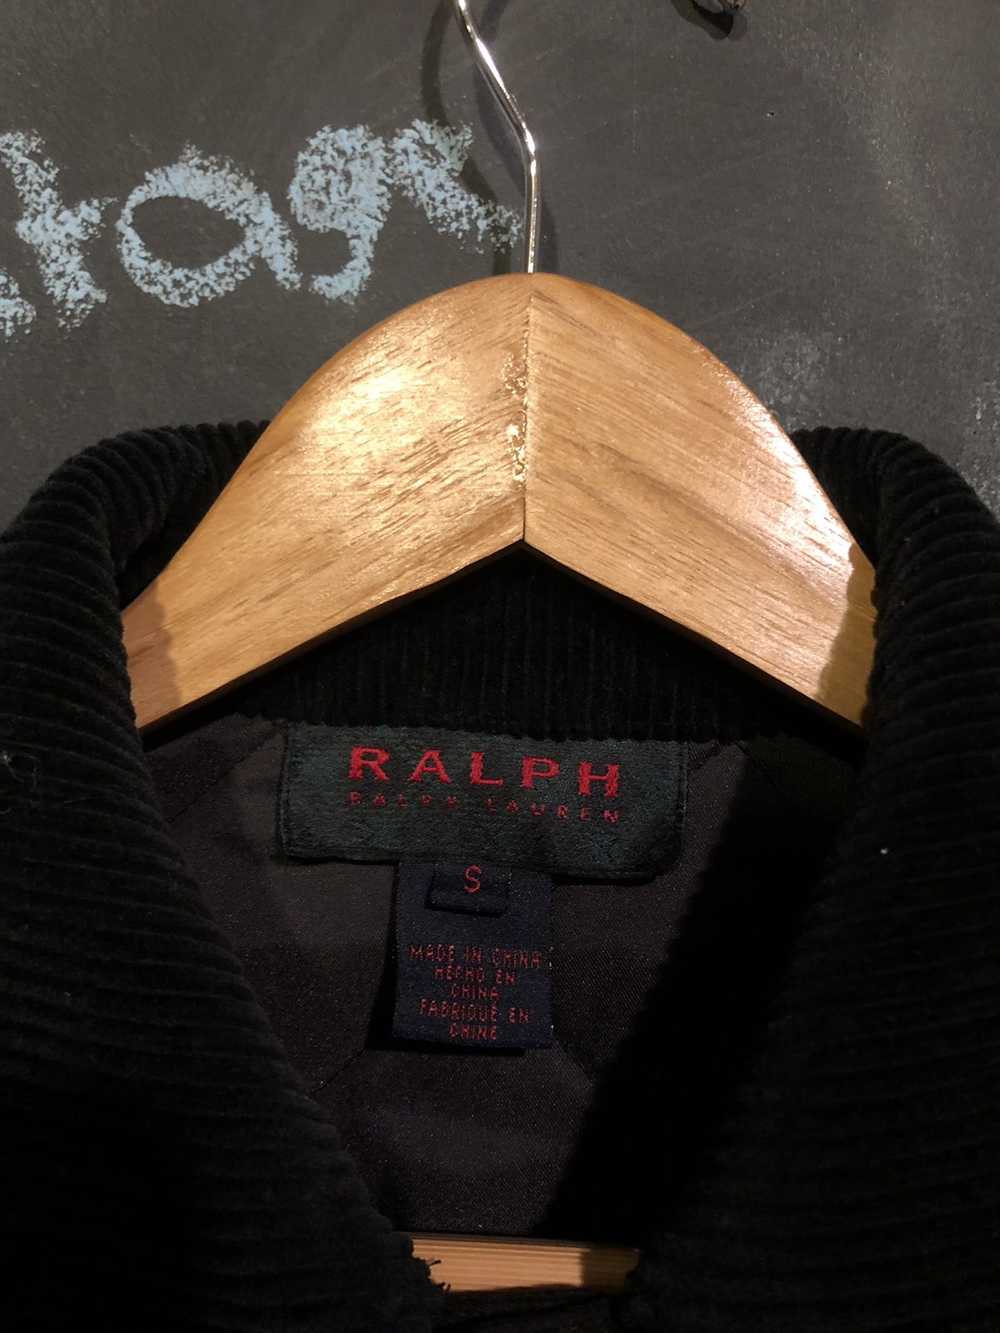 Polo Ralph Lauren Polo Ralph Lauren Quilted Jacket - image 3